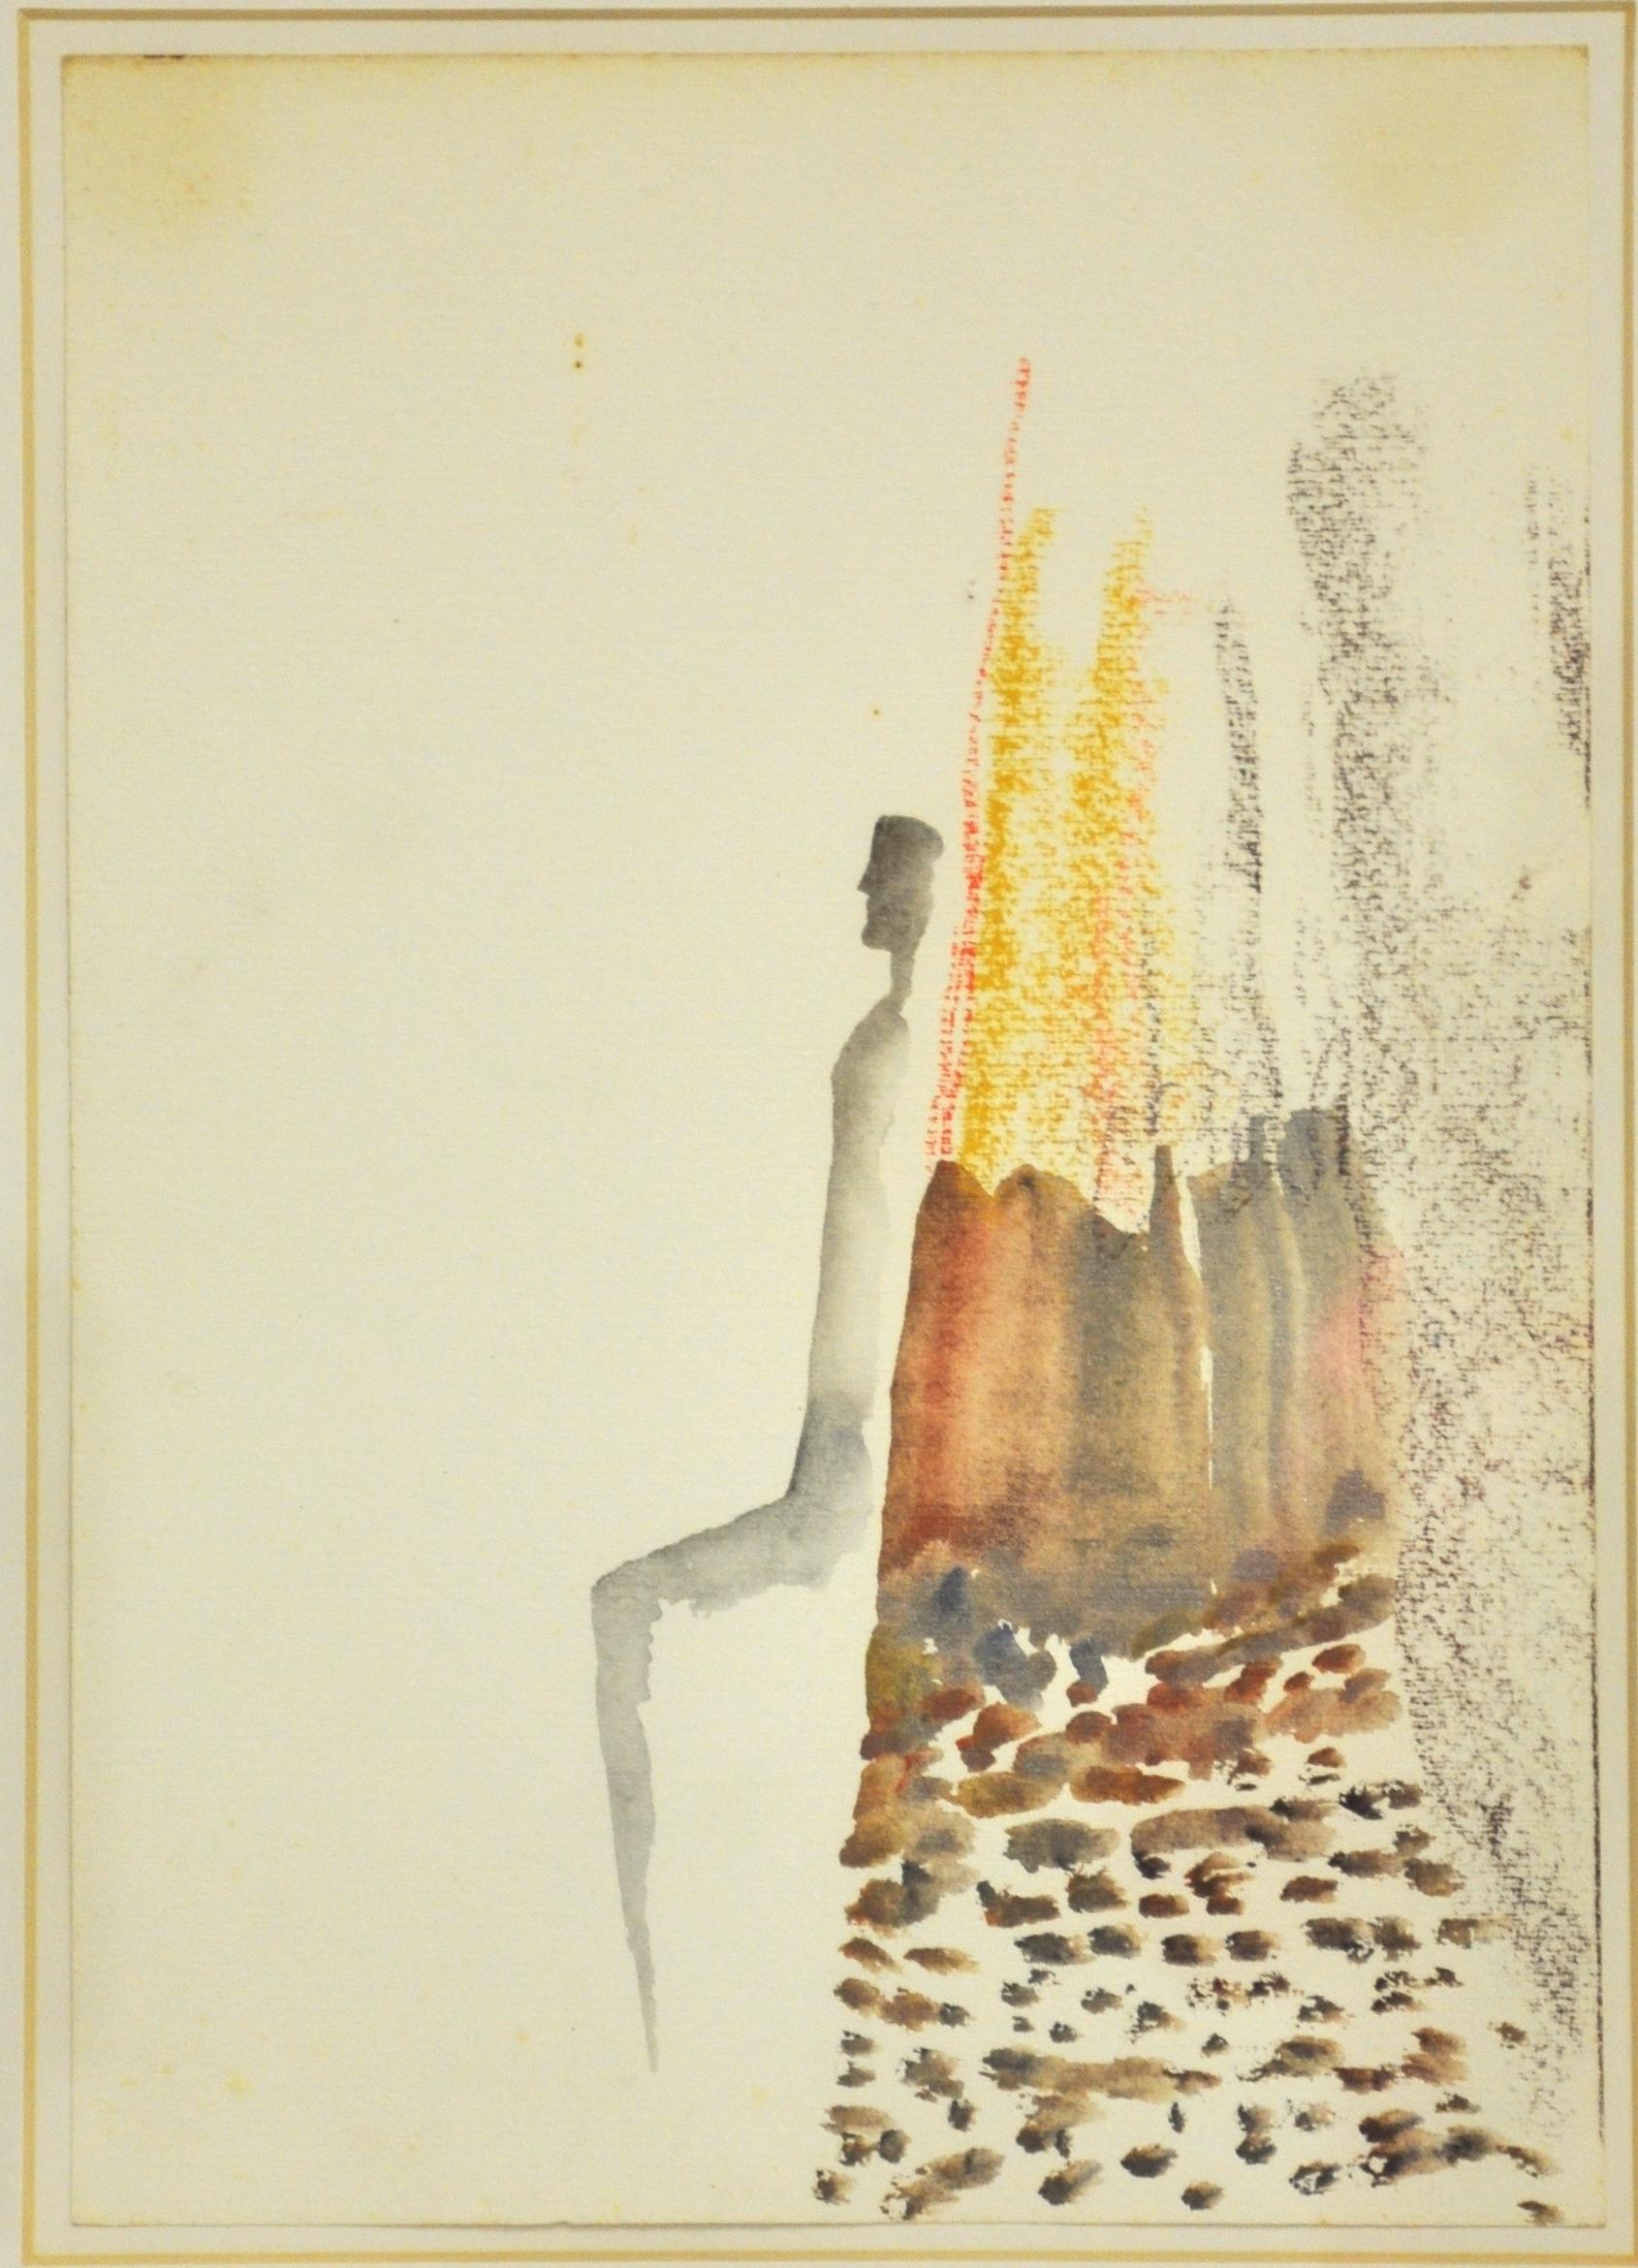 Fausto Melotti Figurative Art - Untitled - Watercolor - 1977